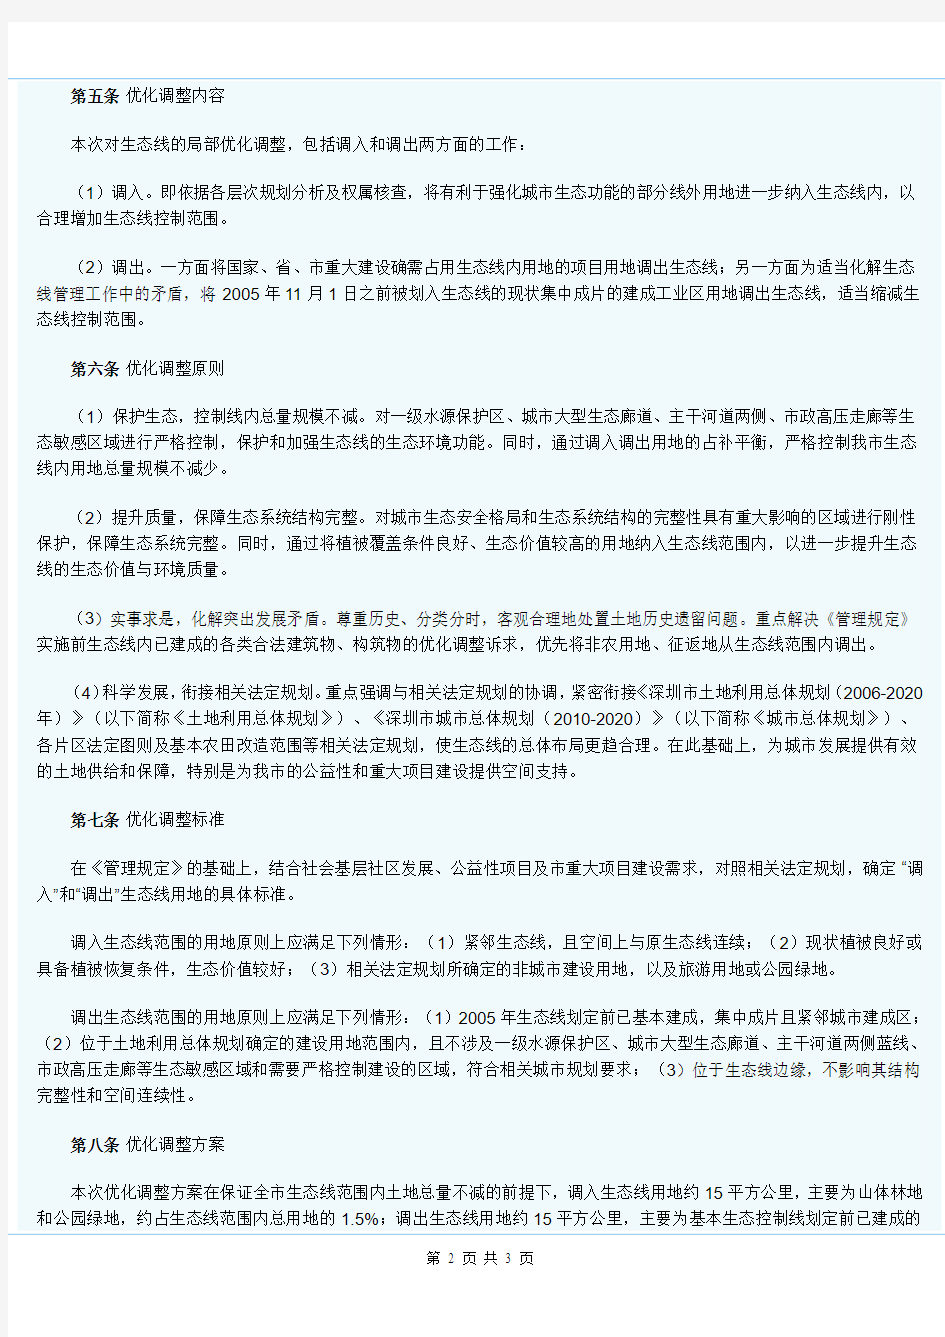 深圳市基本生态控制线优化调整方案2013